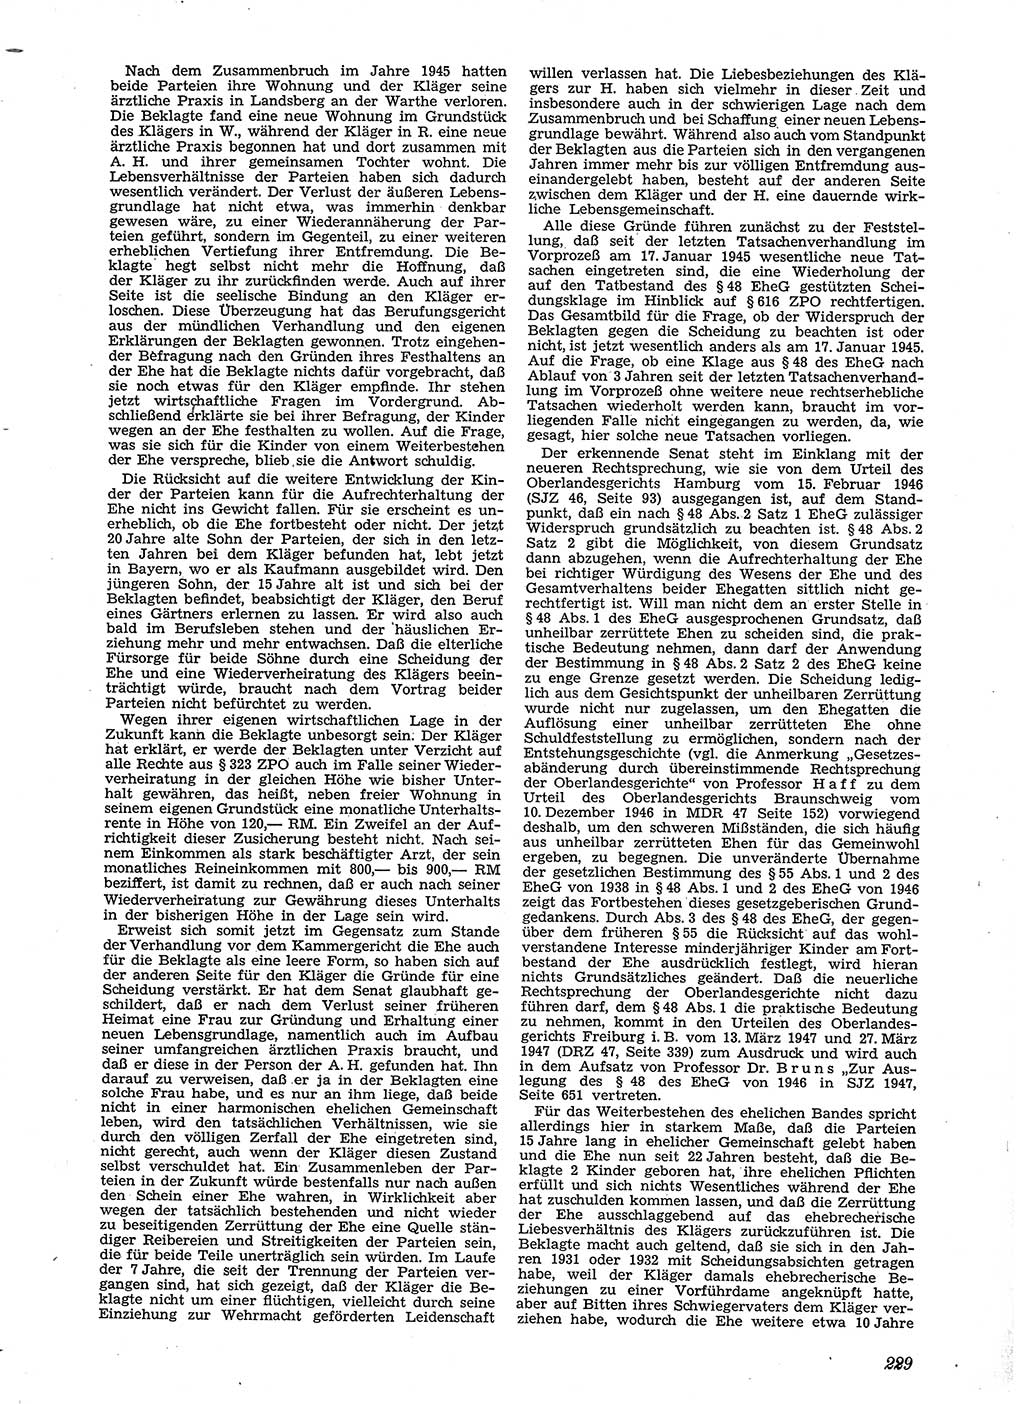 Neue Justiz (NJ), Zeitschrift für Recht und Rechtswissenschaft [Sowjetische Besatzungszone (SBZ) Deutschland], 2. Jahrgang 1948, Seite 229 (NJ SBZ Dtl. 1948, S. 229)